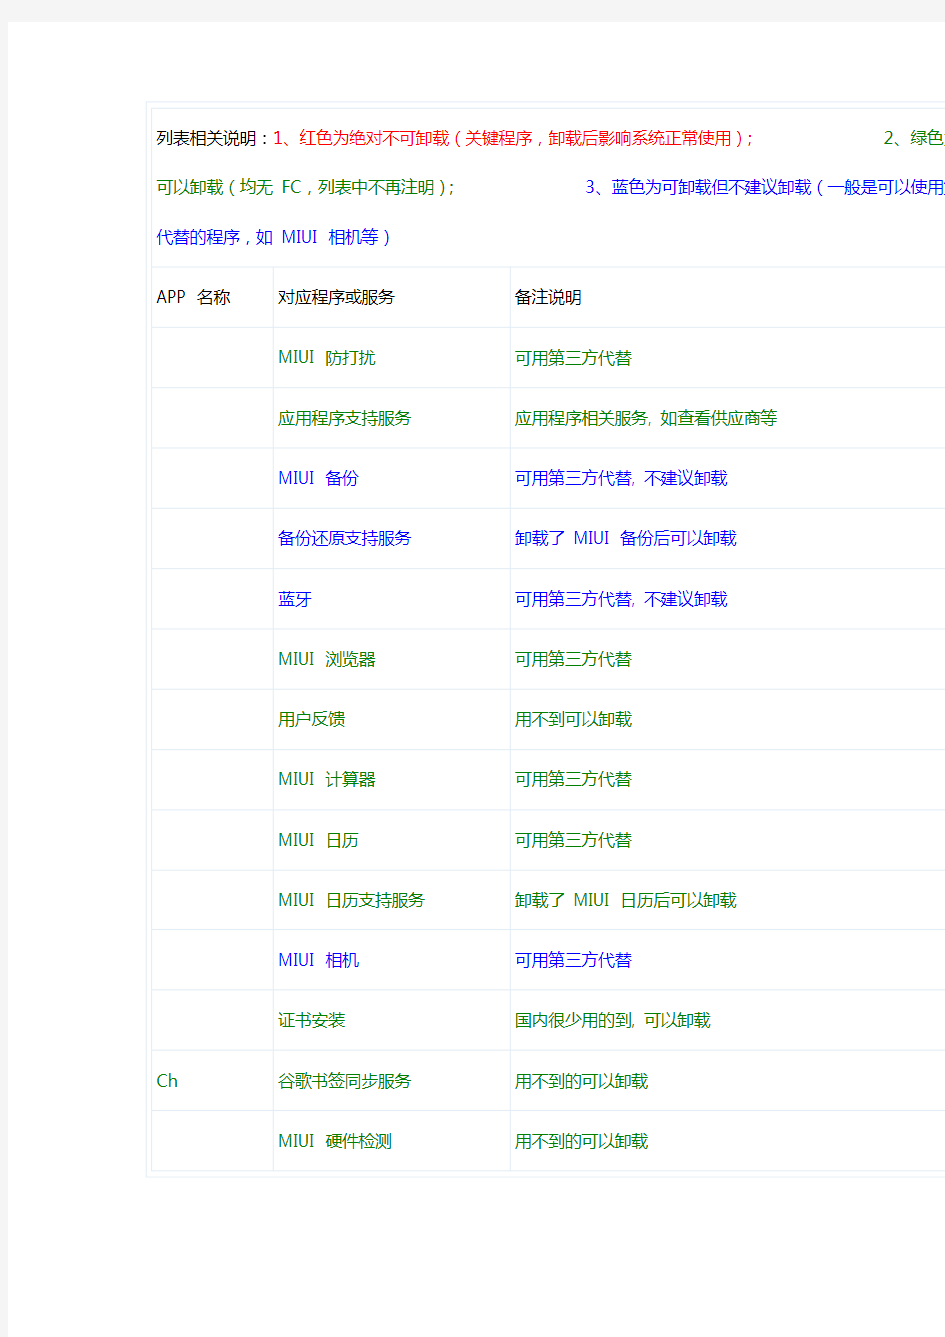 小米MIUI系统自带程序精简列表